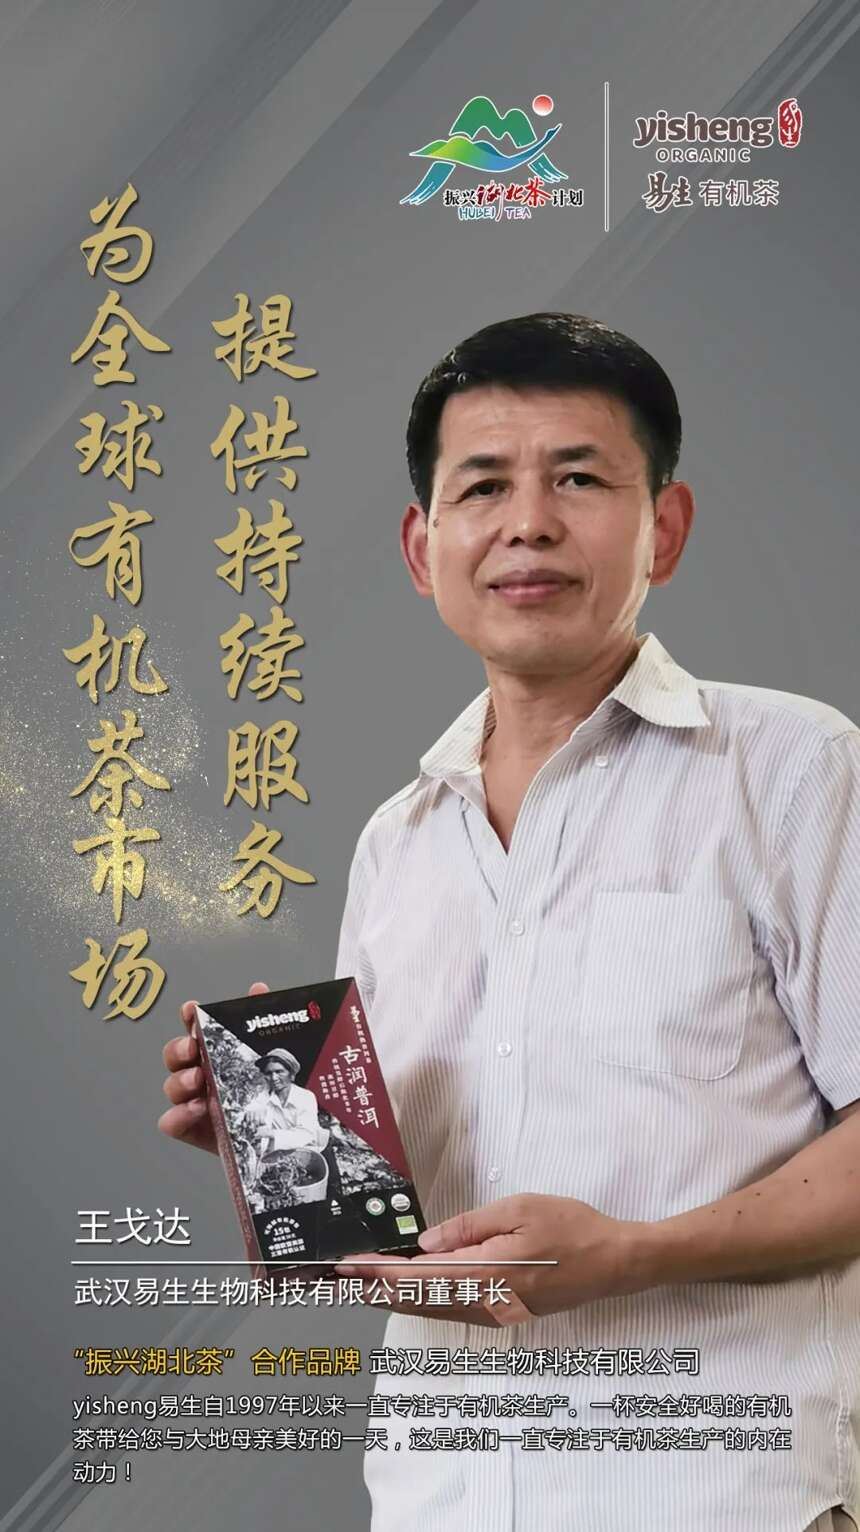 “振兴湖北茶”合作品牌巡礼 |武汉易生生物科技有限公司